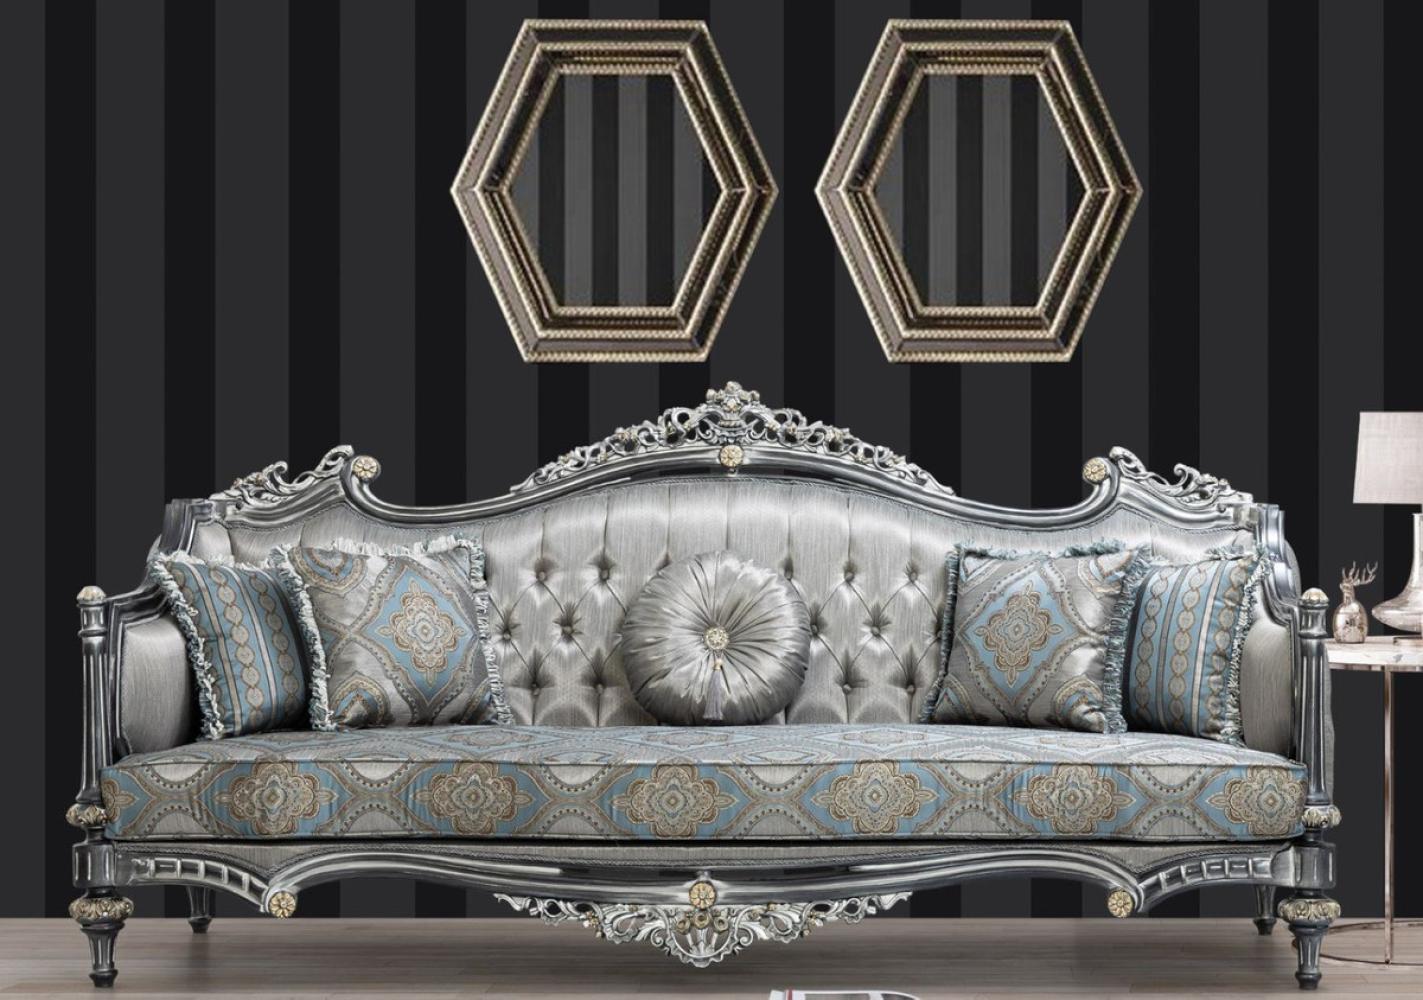 Casa Padrino Luxus Barock Sofa Silber / Türkis / Gold 248 x 96 x H. 118 cm - Prunkvolles Massivholz Wohnzimmer Sofa mit elegantem Muster und dekorativen Kissen Bild 1